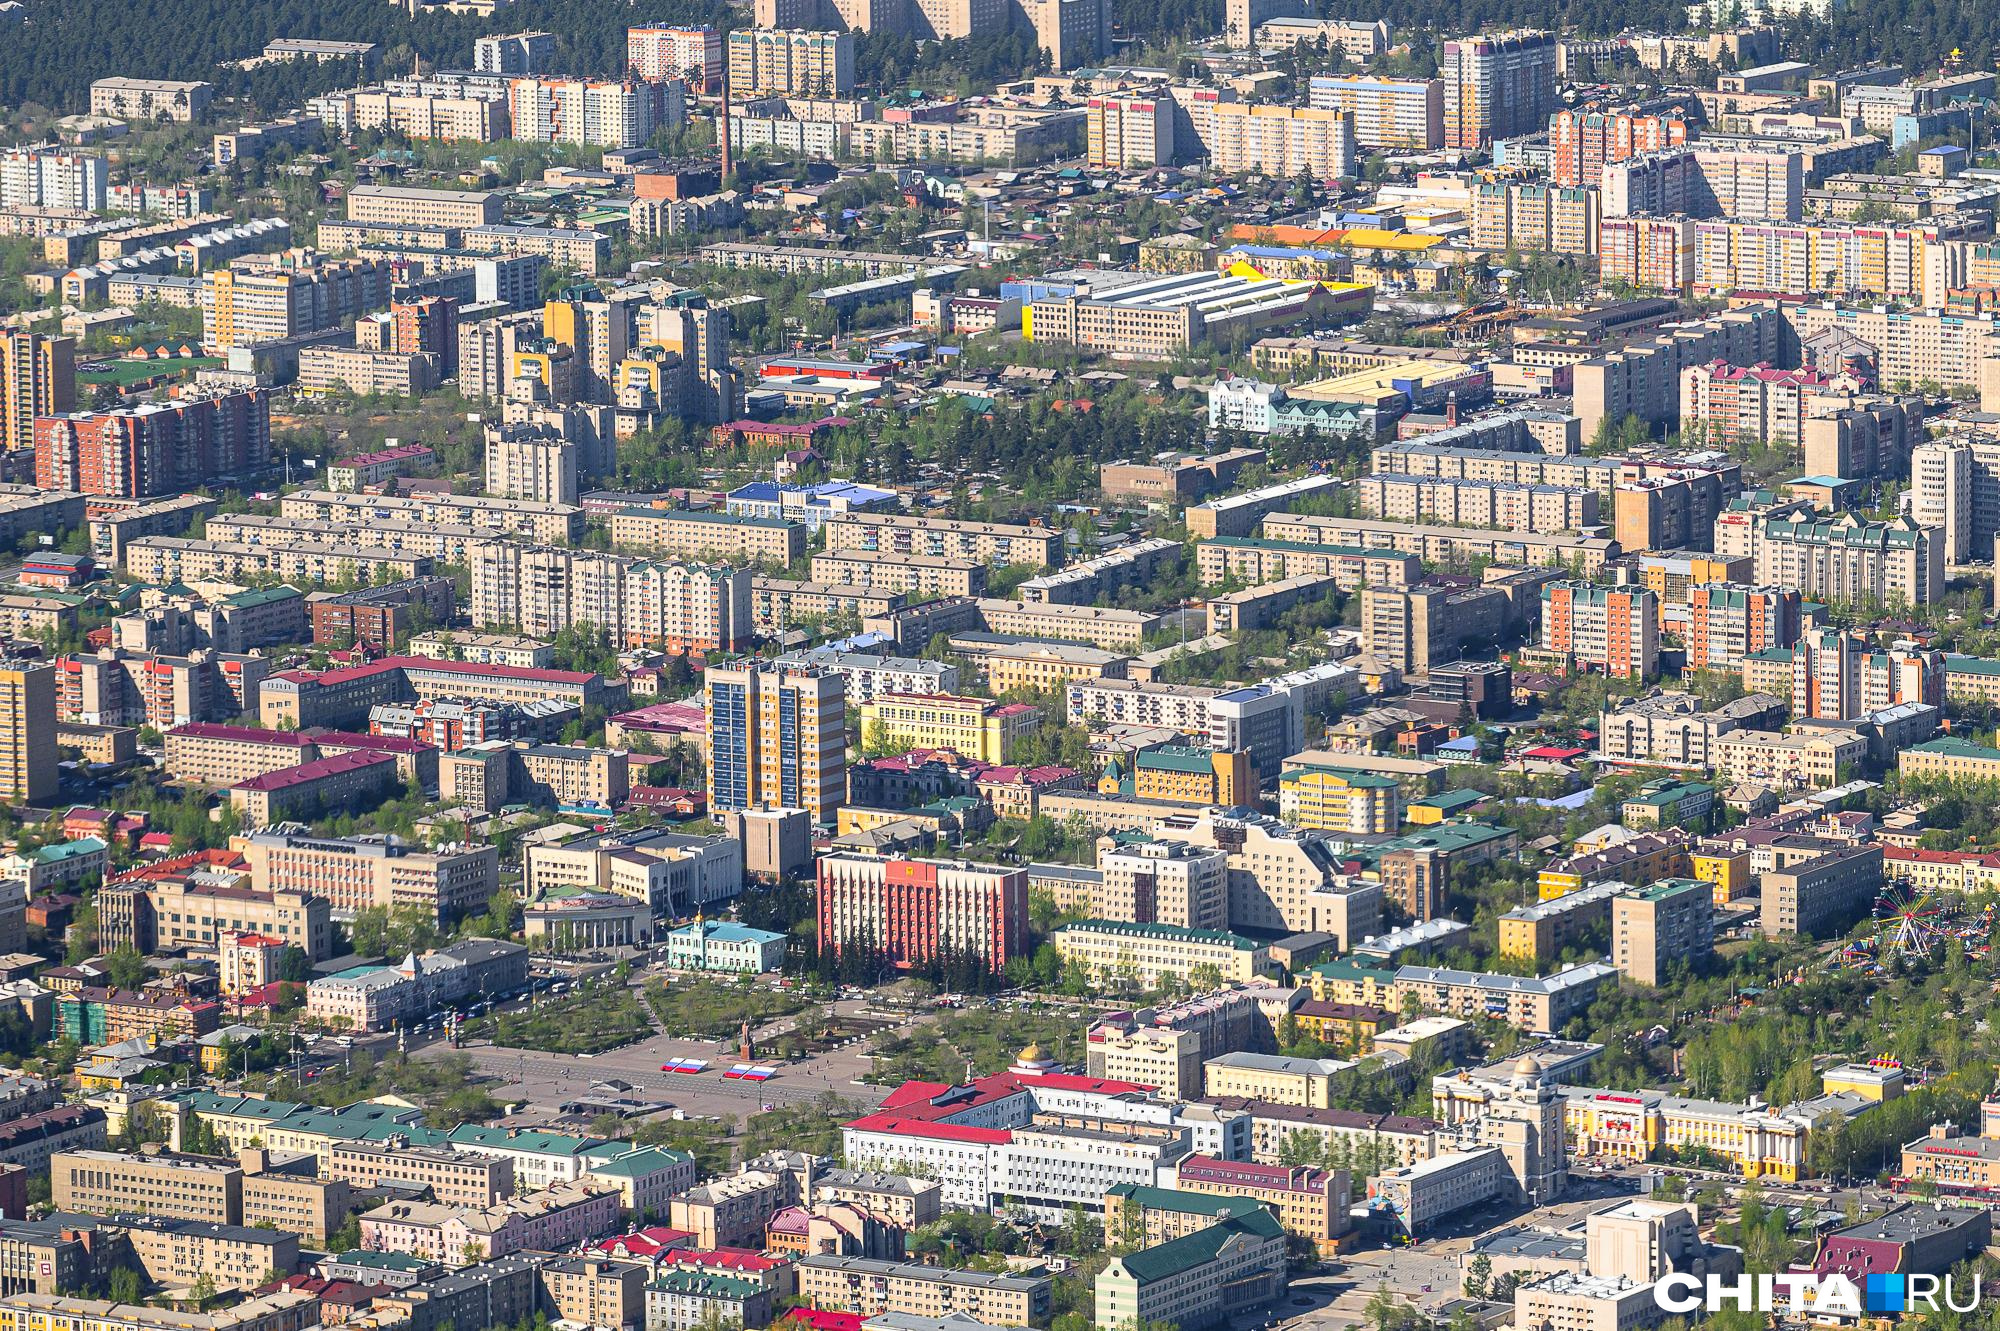 Улицы Маньчжурская, Пекинская и Хайларская могут появиться в Чите — идею предложил глава города Ярилов